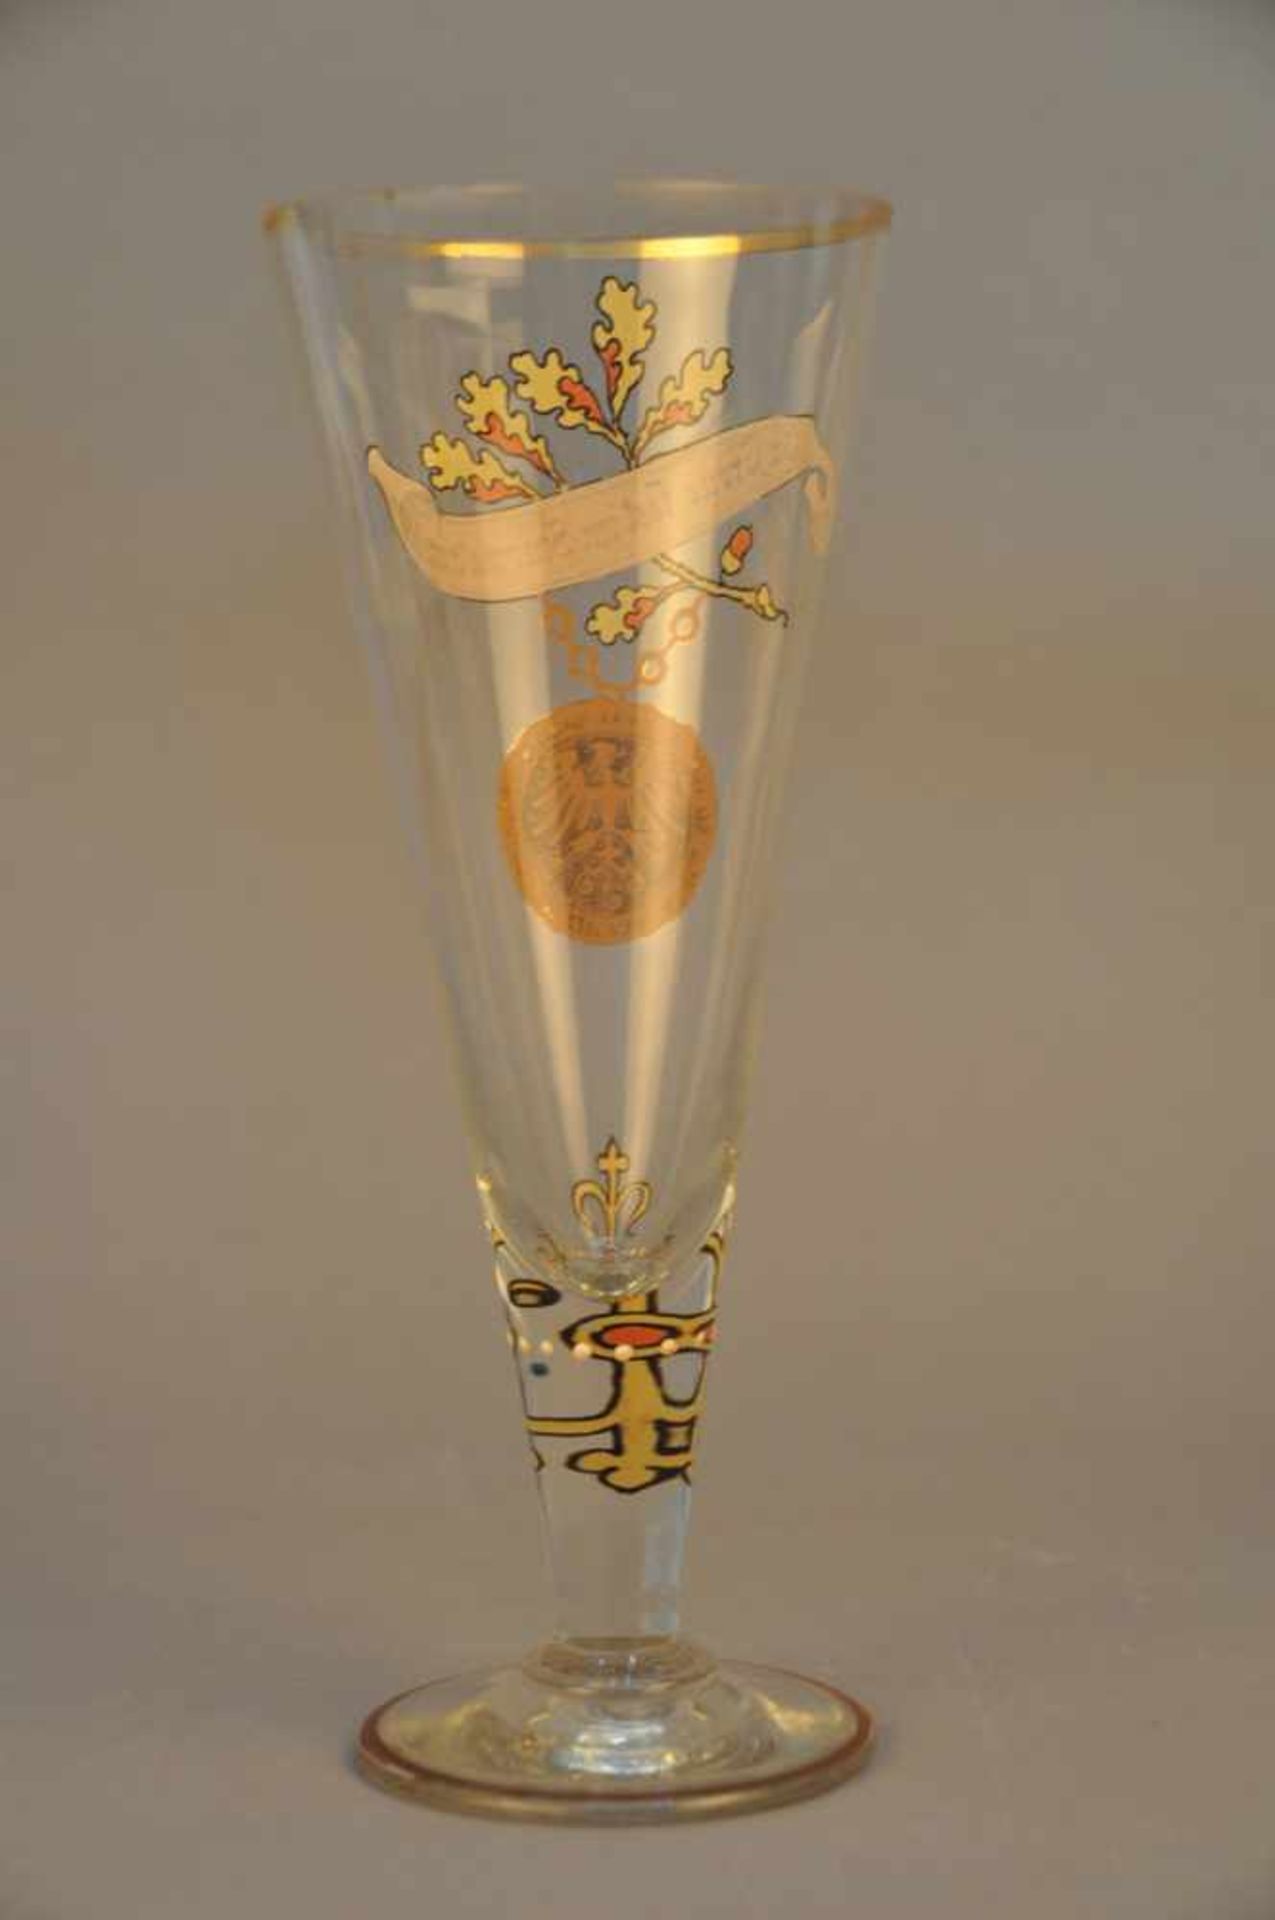 Kelchglas mit Emaillemalerei.Amulett, Eichenlaub und stilisiertes Kreuz, deutscher Sinnspruch / - Bild 2 aus 3